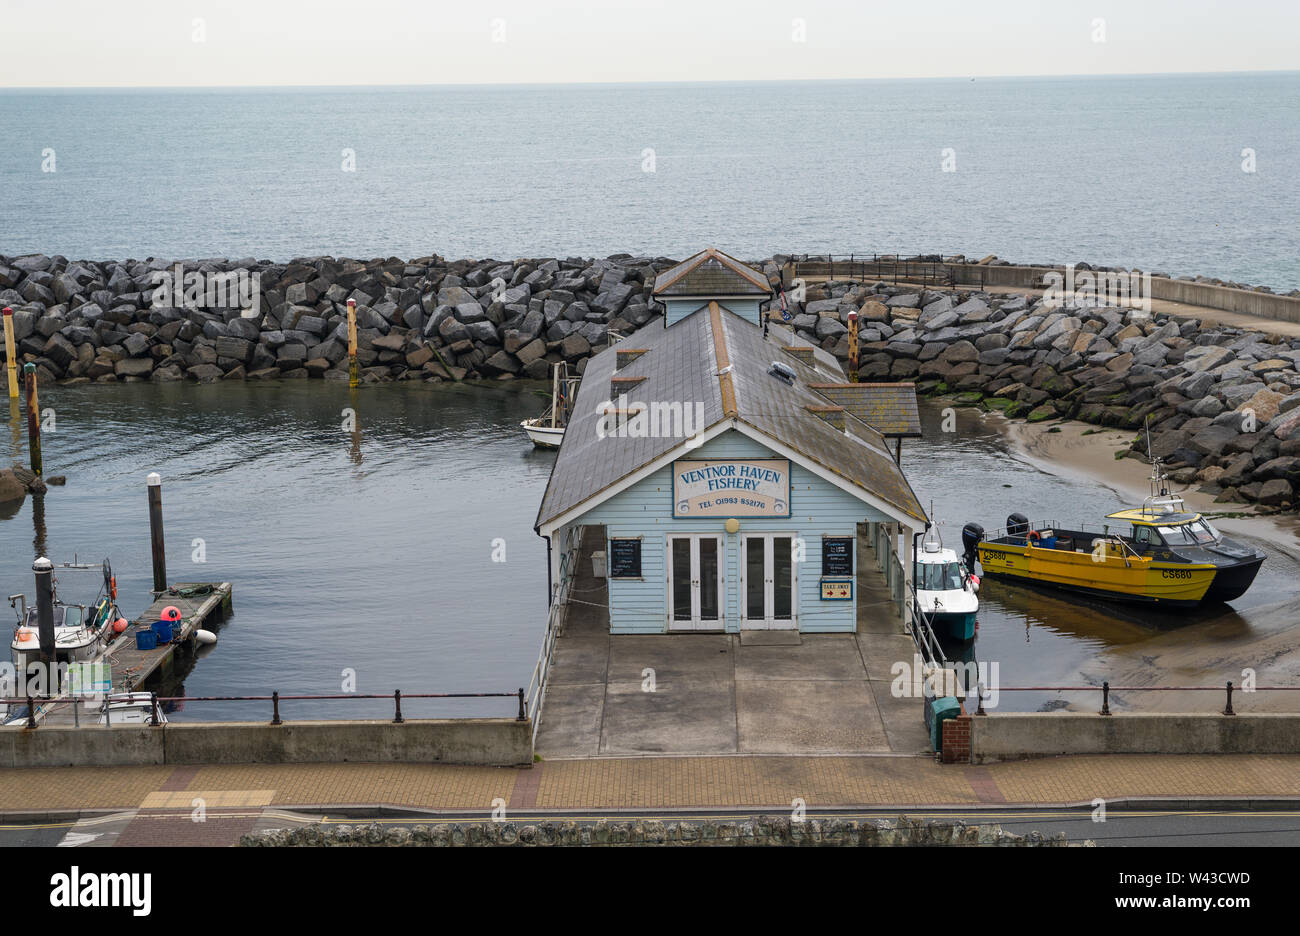 Ventnor Haven restaurant de fruits de mer de la pêche et de négoce, situé dans un petit port sur le front de mer à Ventnor, île de Wight, Angleterre, RU Banque D'Images